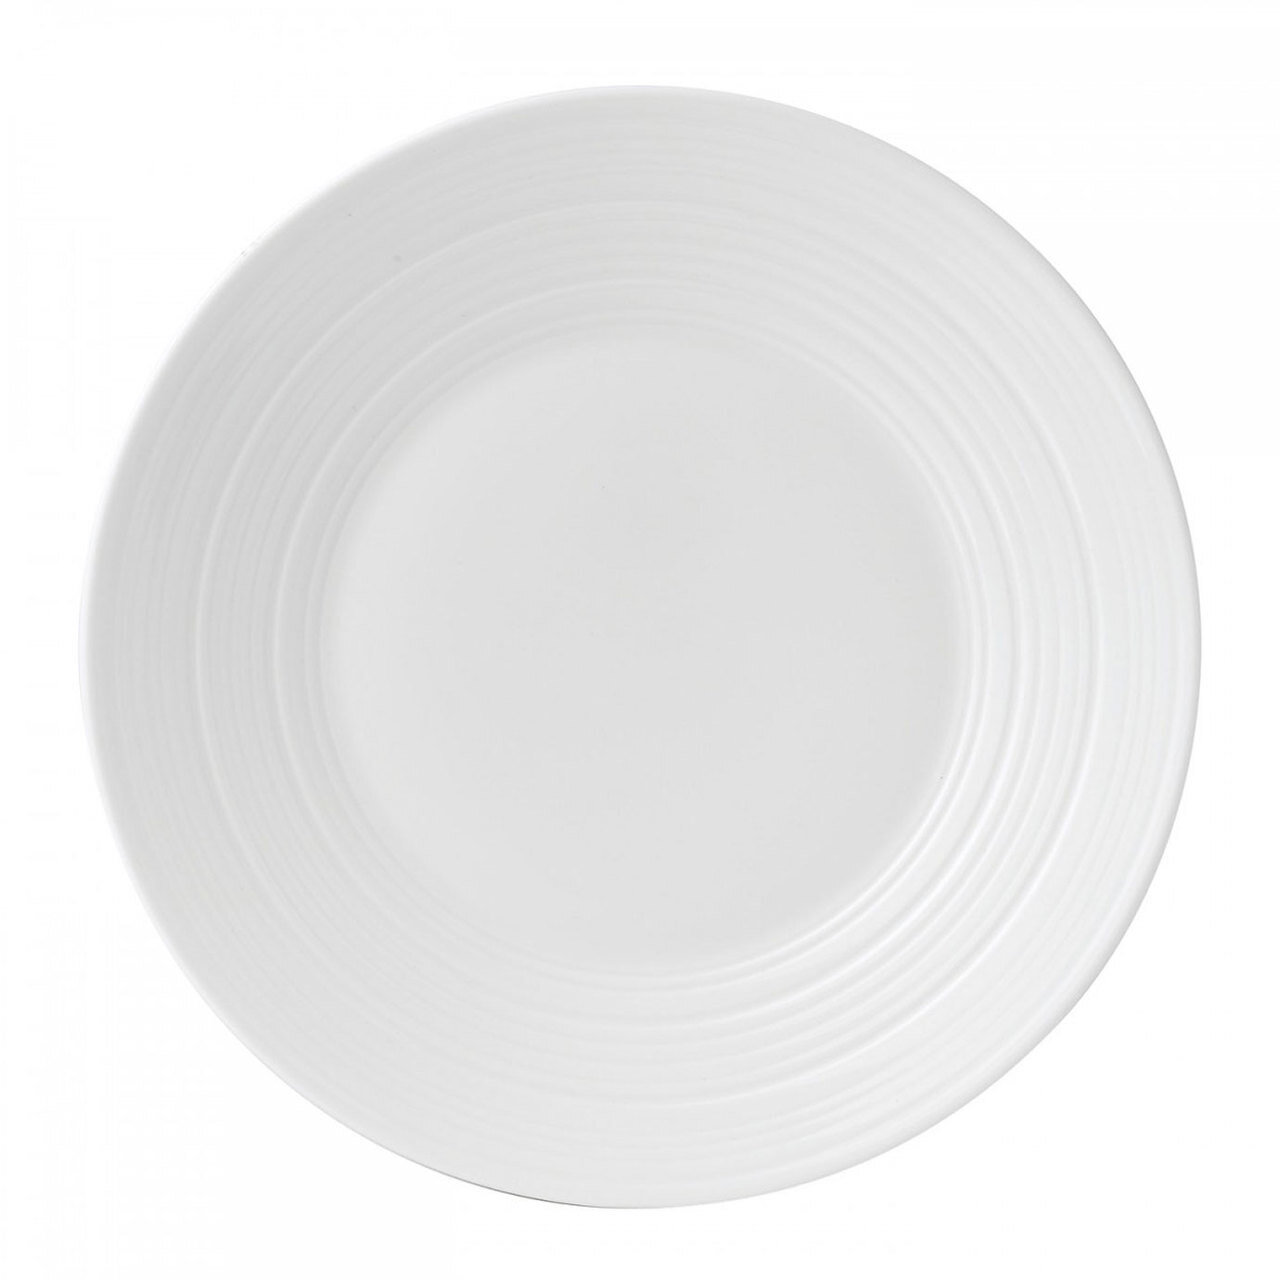 Wedgwood Jasper Conran White Bone China Salad Plate Swirl 9 Inch